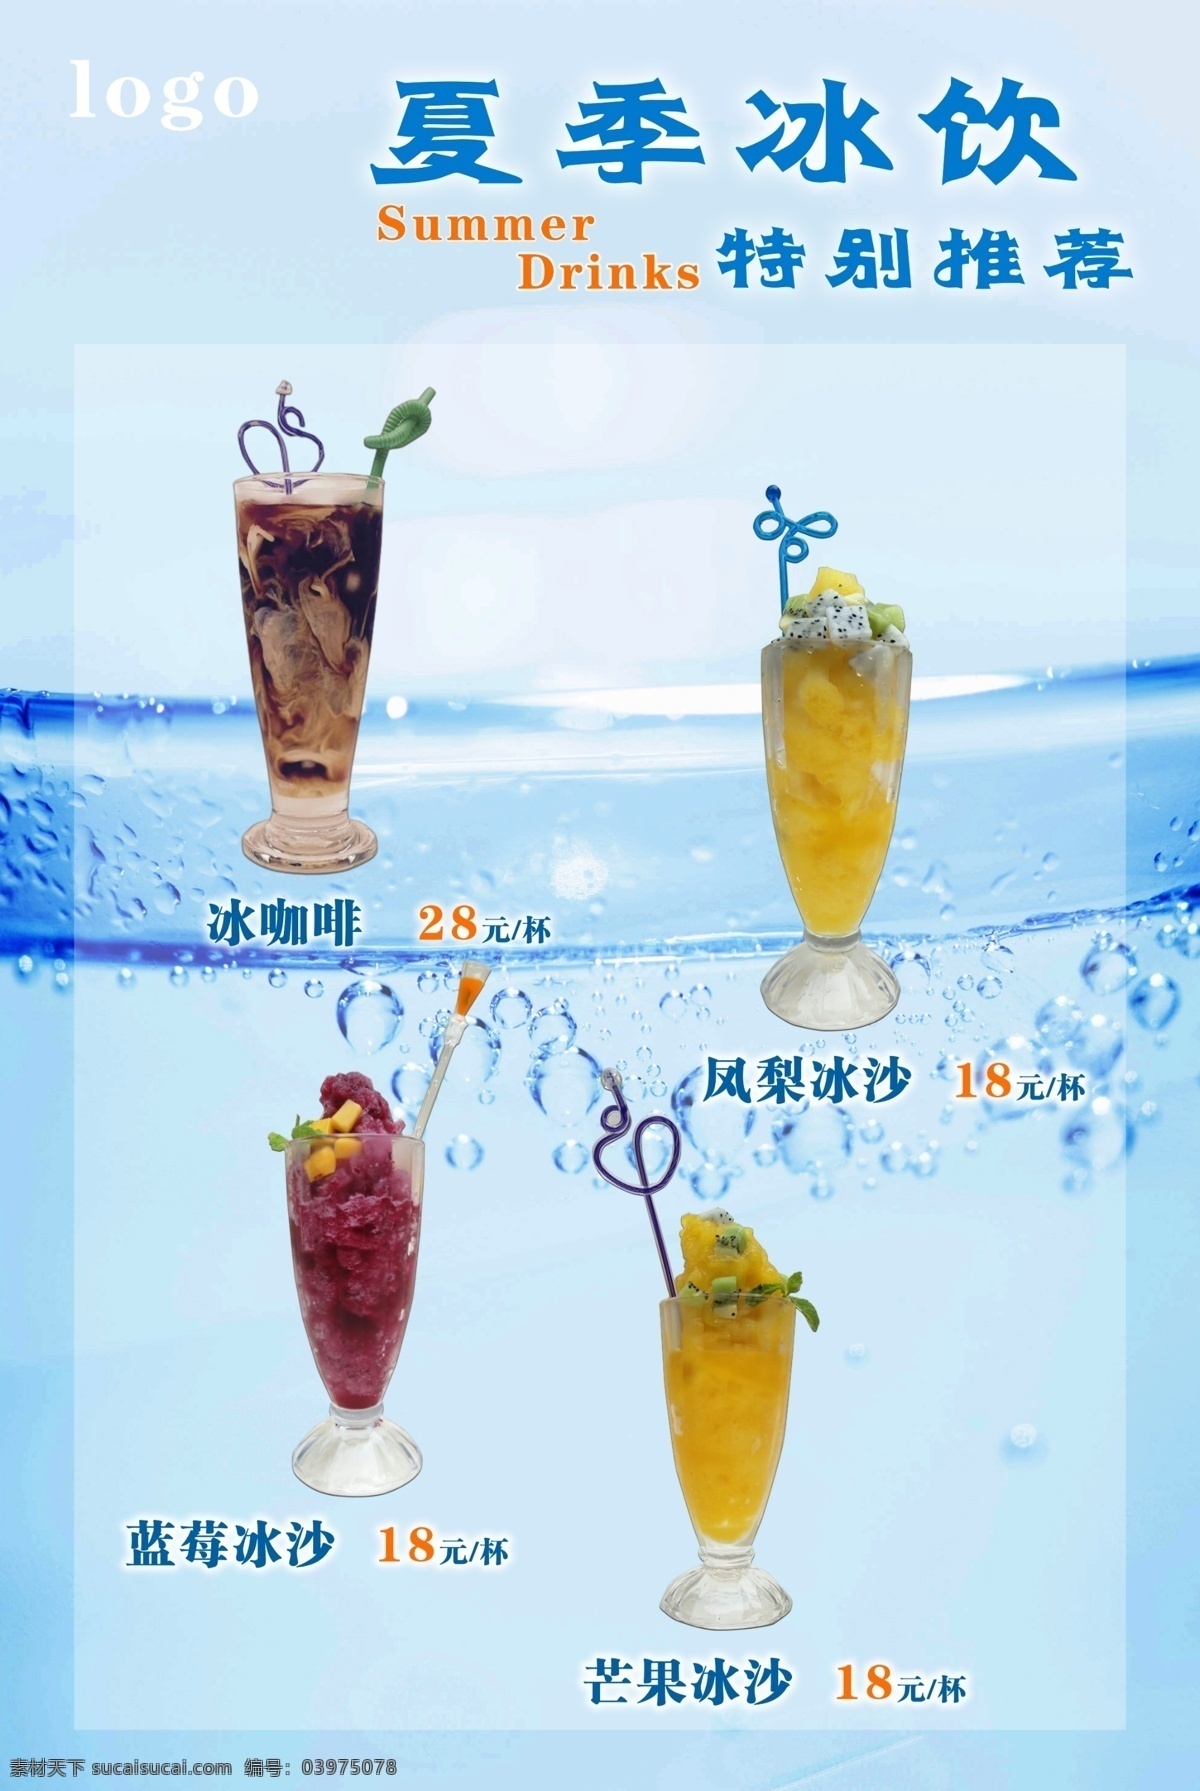 夏季饮品推荐 夏季 夏日 夏天 暑期 暑假 特价 优惠 饮品 饮料 水果 推荐 冰沙 冰饮